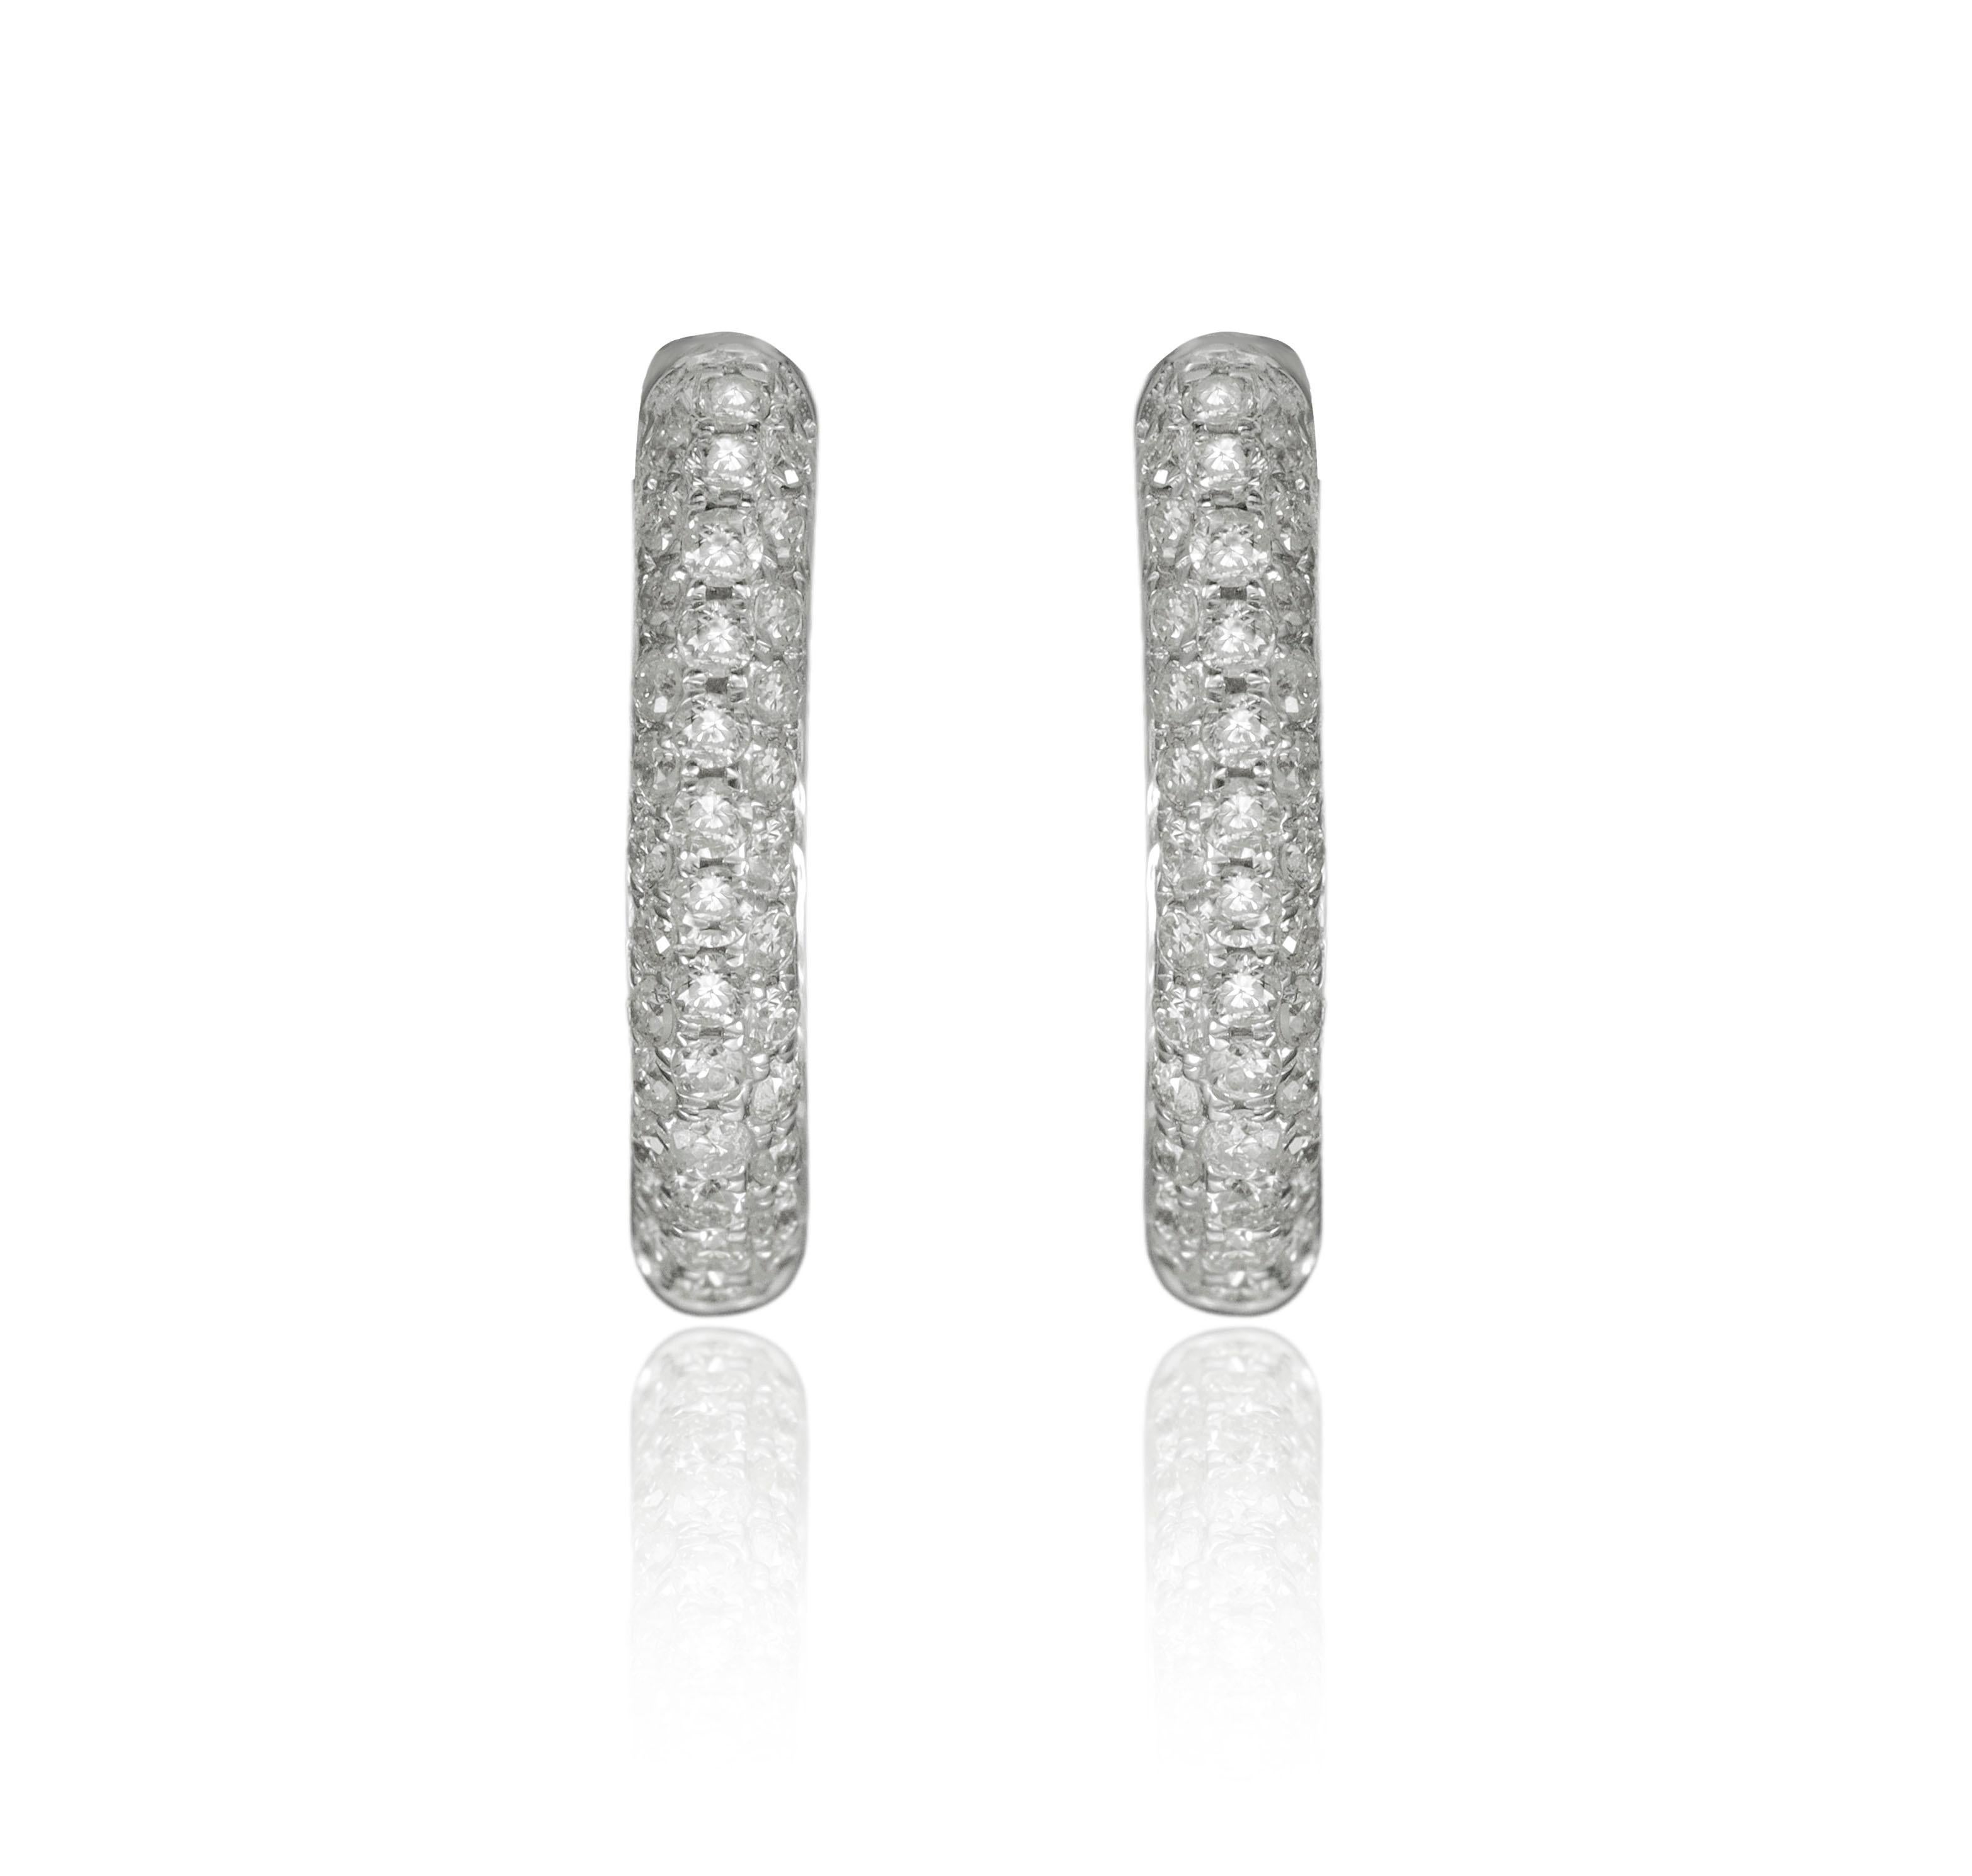 14K Weißgold Diamant  Ohrringe mit 0,25 Karat Diamanten

Unterstreichen Sie Ihren Look mit diesen scharfen Diamant-Ohrringen aus 14K Weißgold. Hochwertige Diamanten. Diese Ohrringe unterstreichen Ihren exquisiten Look zu jedem Anlass.

. ist seit